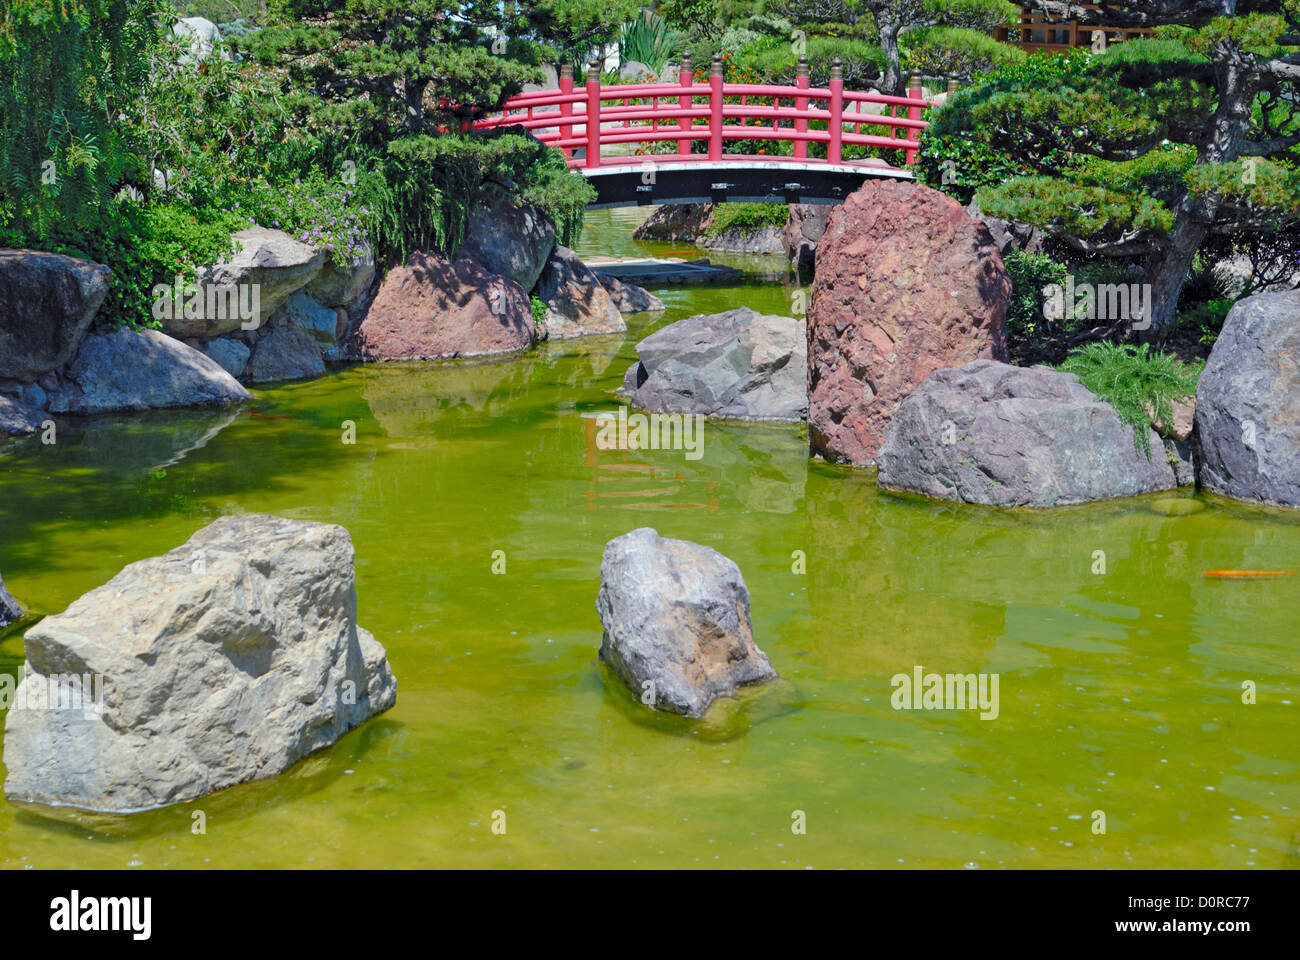 Japanese red bridge in zen garden Stock Photo